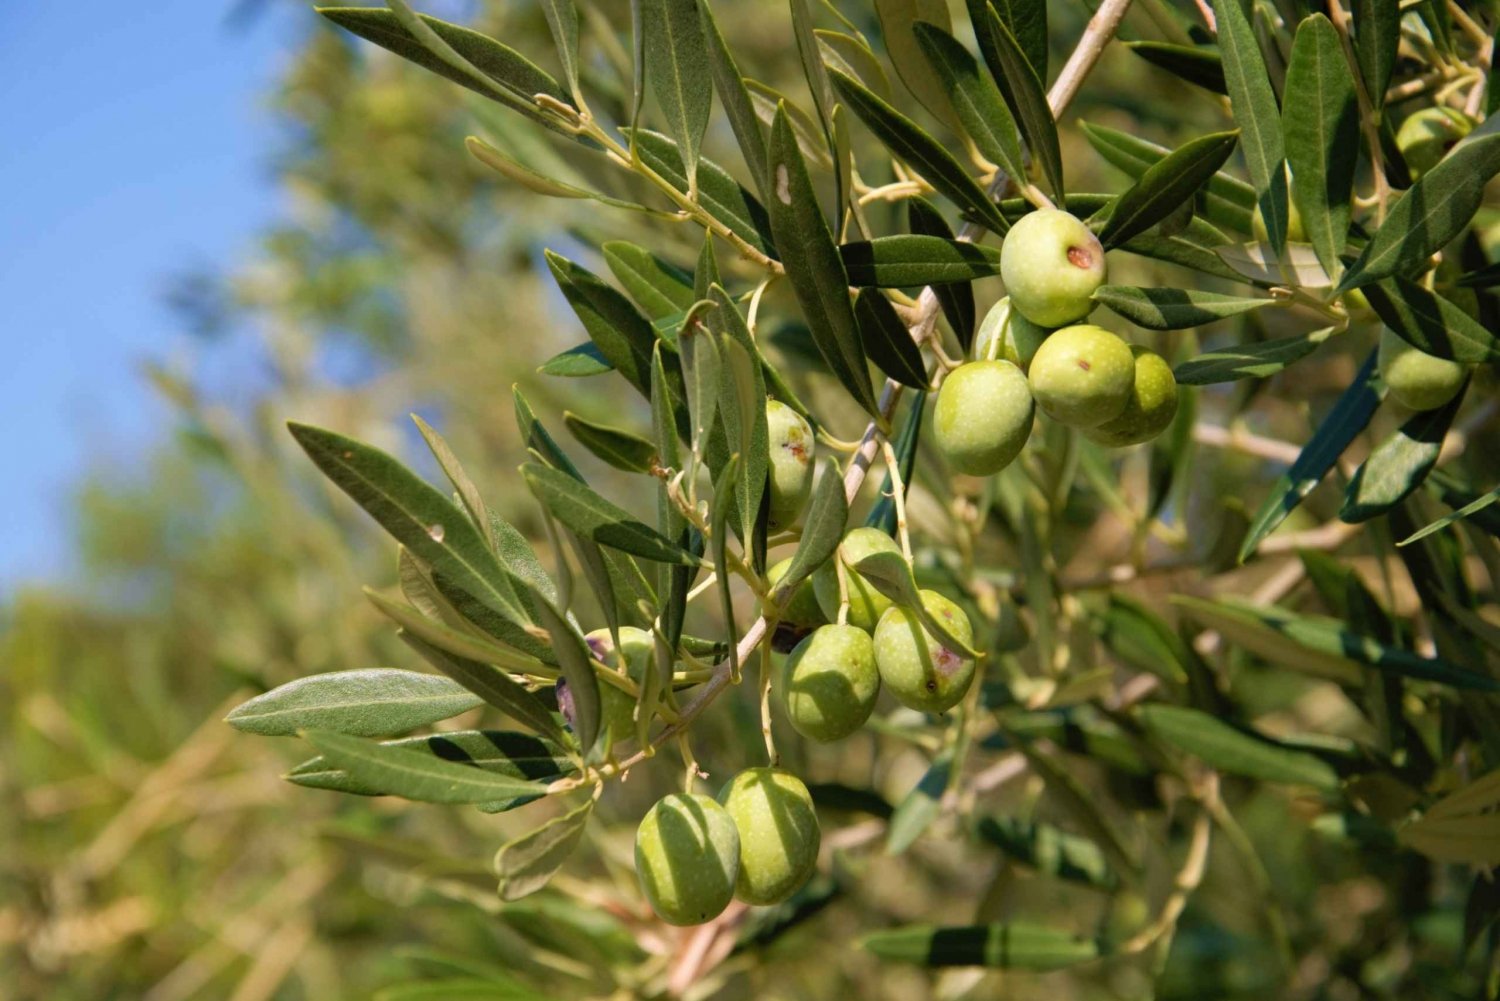 Cres: Olivenoljevandring med smaksprøver